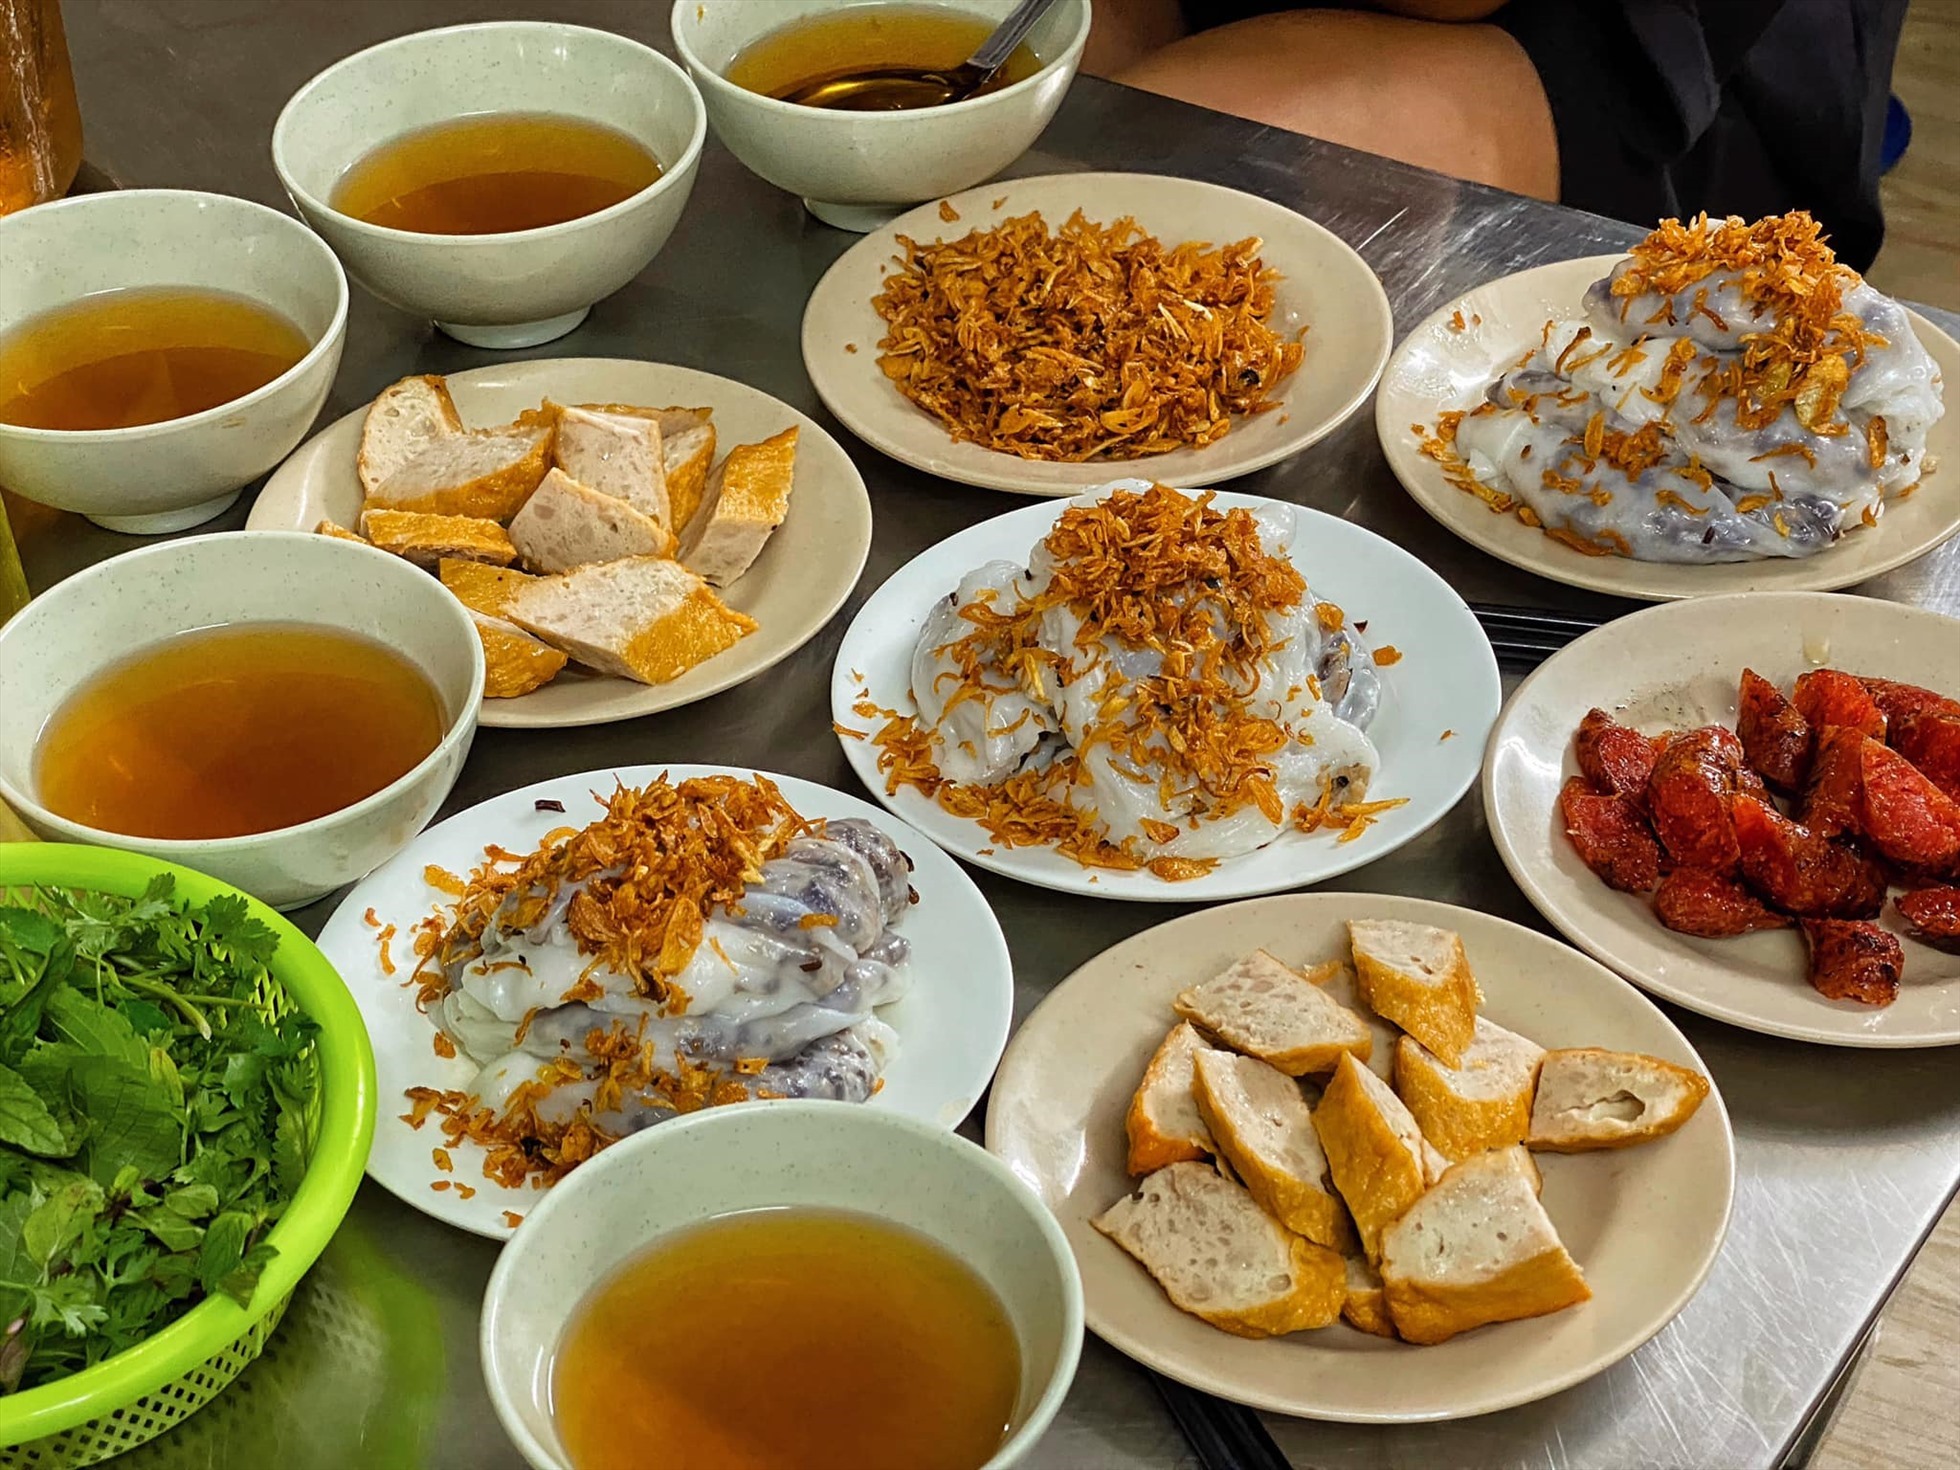 Bánh cuốn đậm chất truyền thống Việt Nam dễ dàng thu hút sự quan tâm, yêu thích của du khách quốc tế. Ảnh: Ngoc Anh Hoang